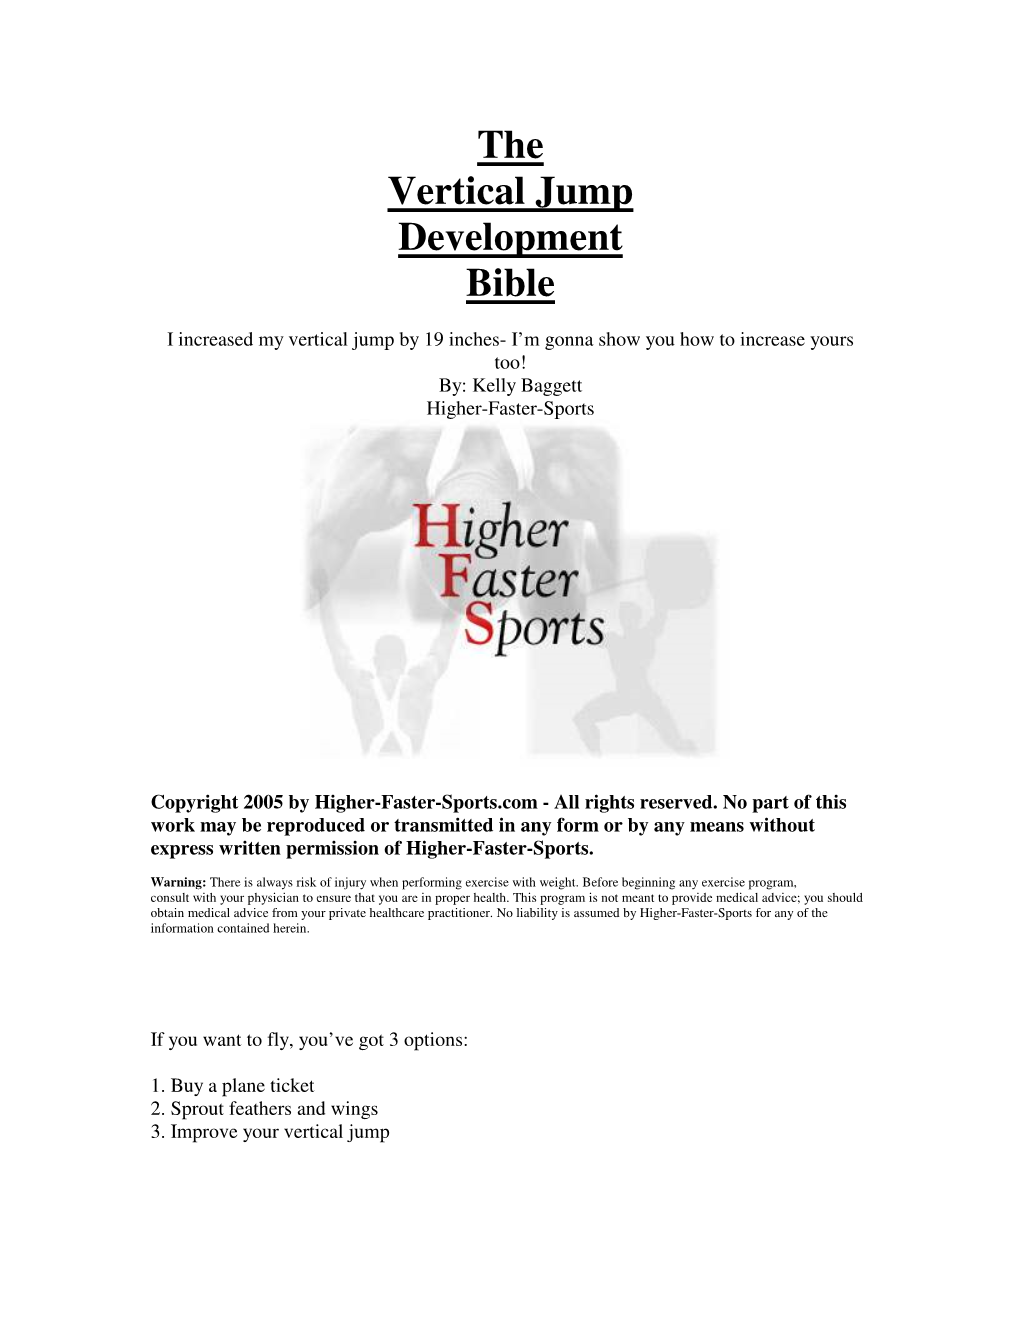 The Vertical Jump Development Bible